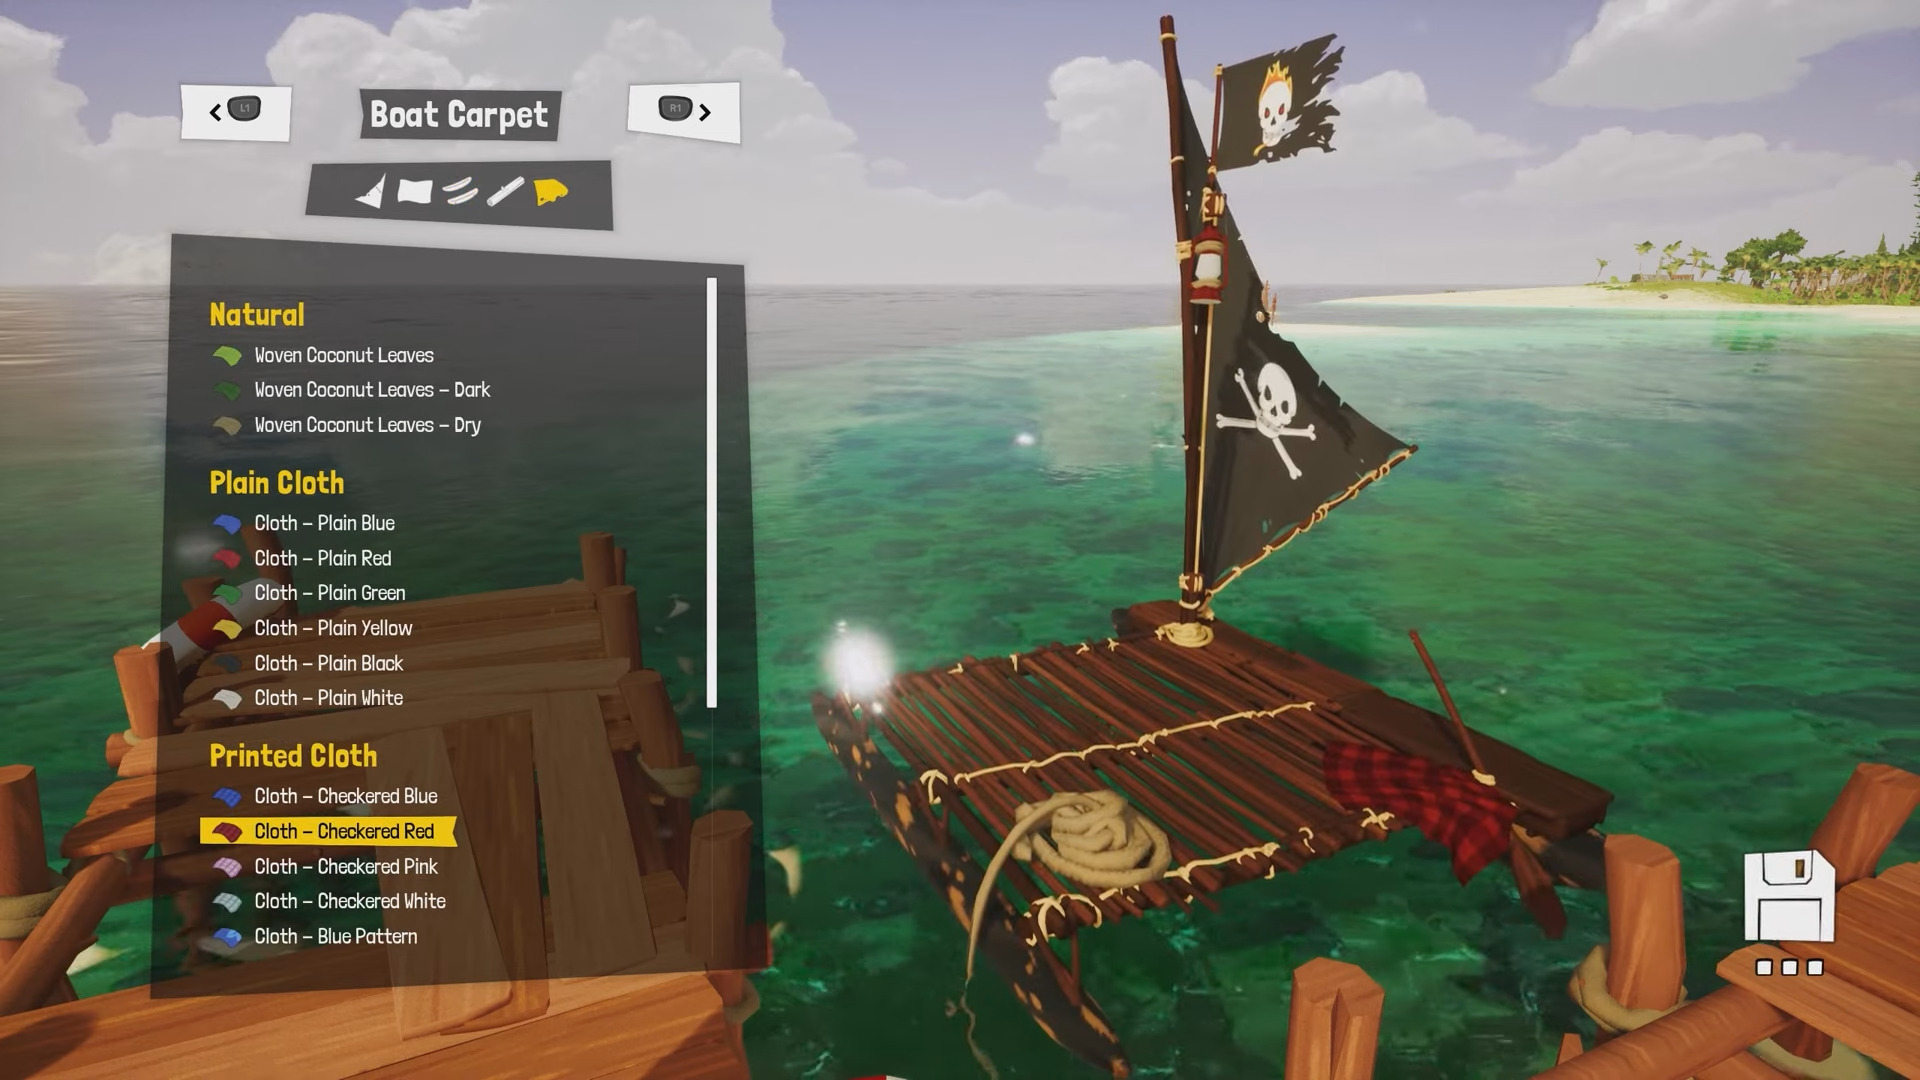 Awaceb a parlé de la personnalisation du personnage dans Tchia. Les joueurs pourront rechercher différents vêtements, créer leur propre bateau et disposer d'une caméra dans leur arsenal. -10